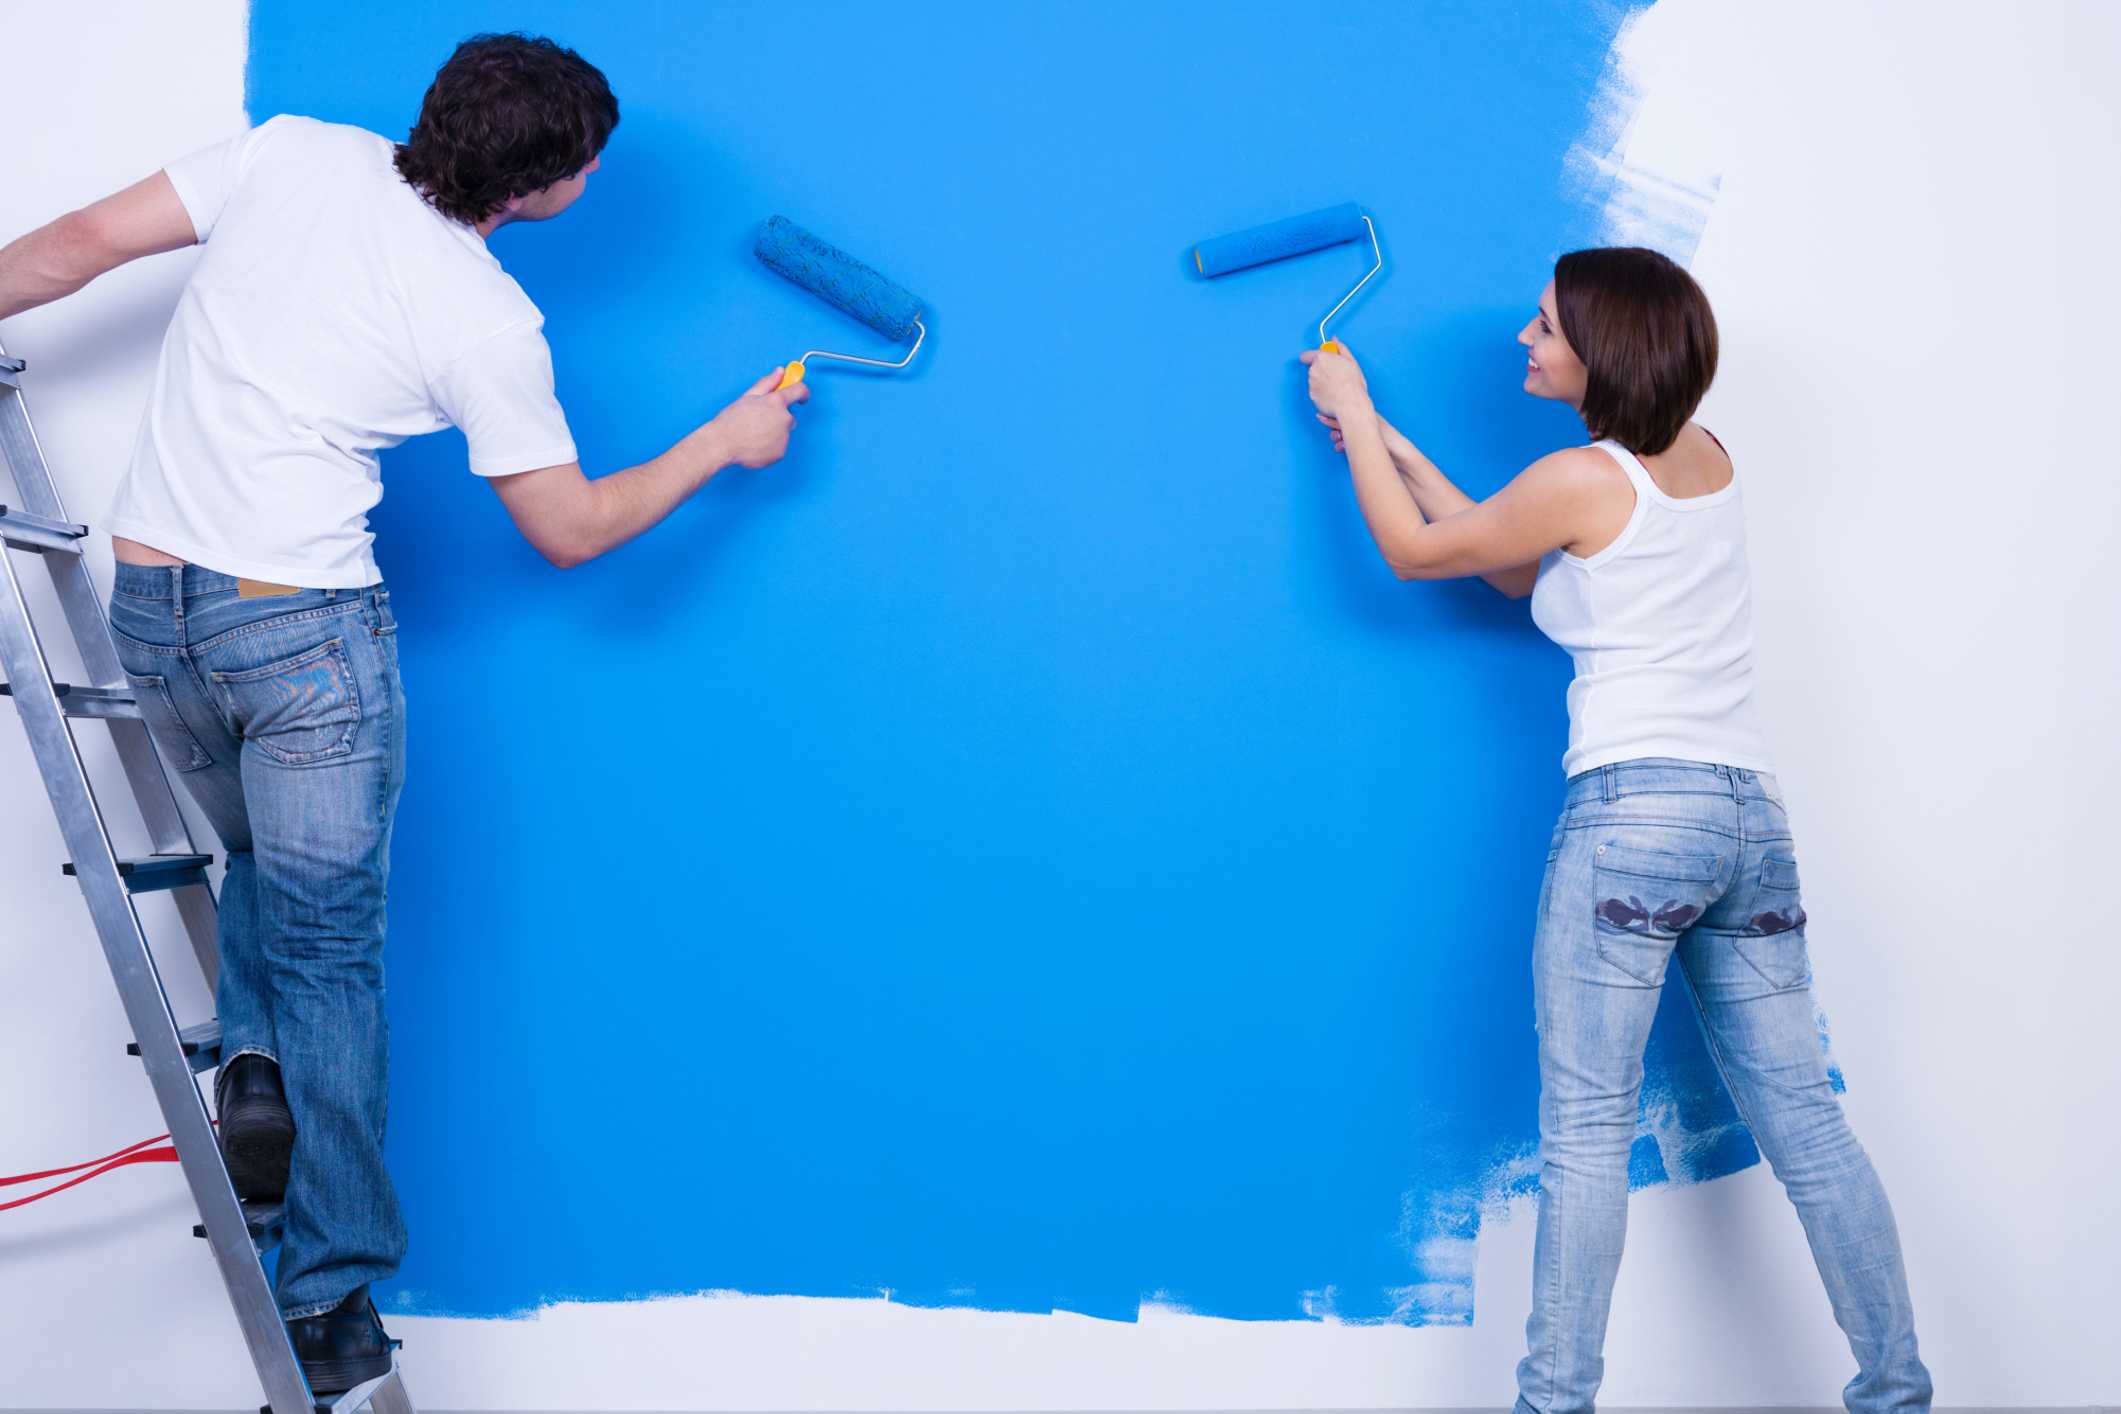 Покраска стен или обои? сравнение способов отделки | дизайн интерьера